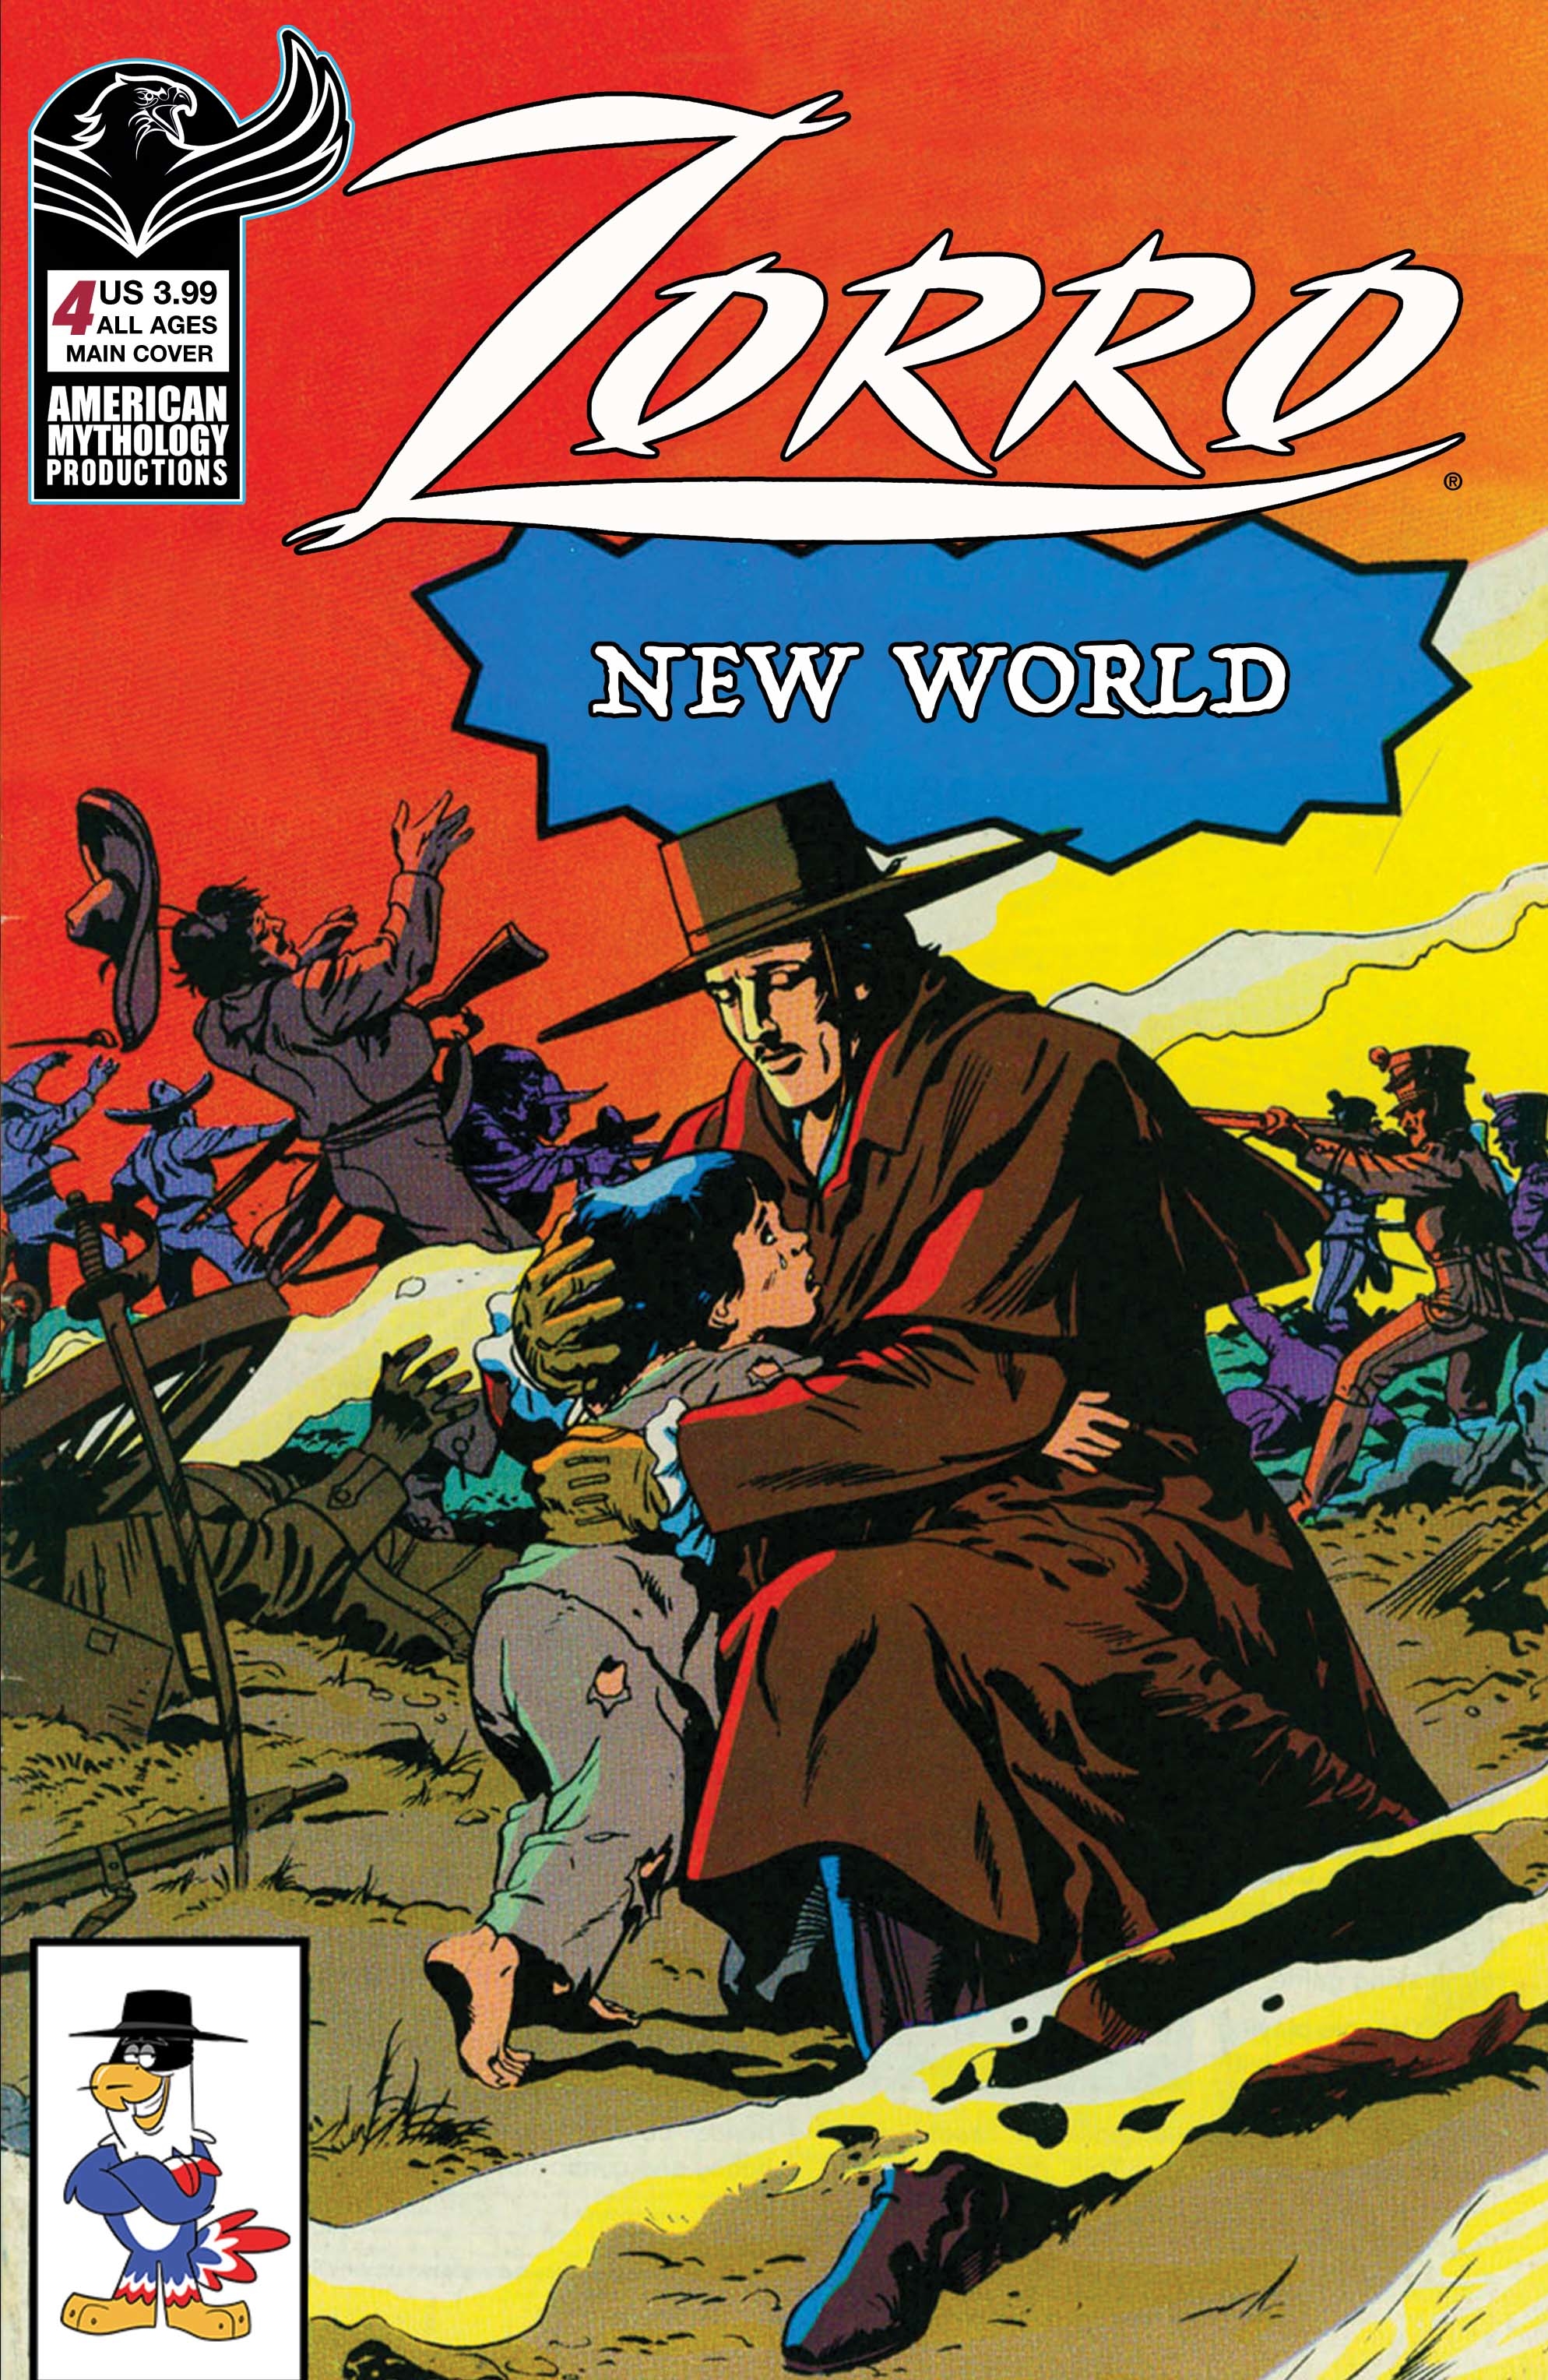 Zorro New World #4 Cover A Capaldi